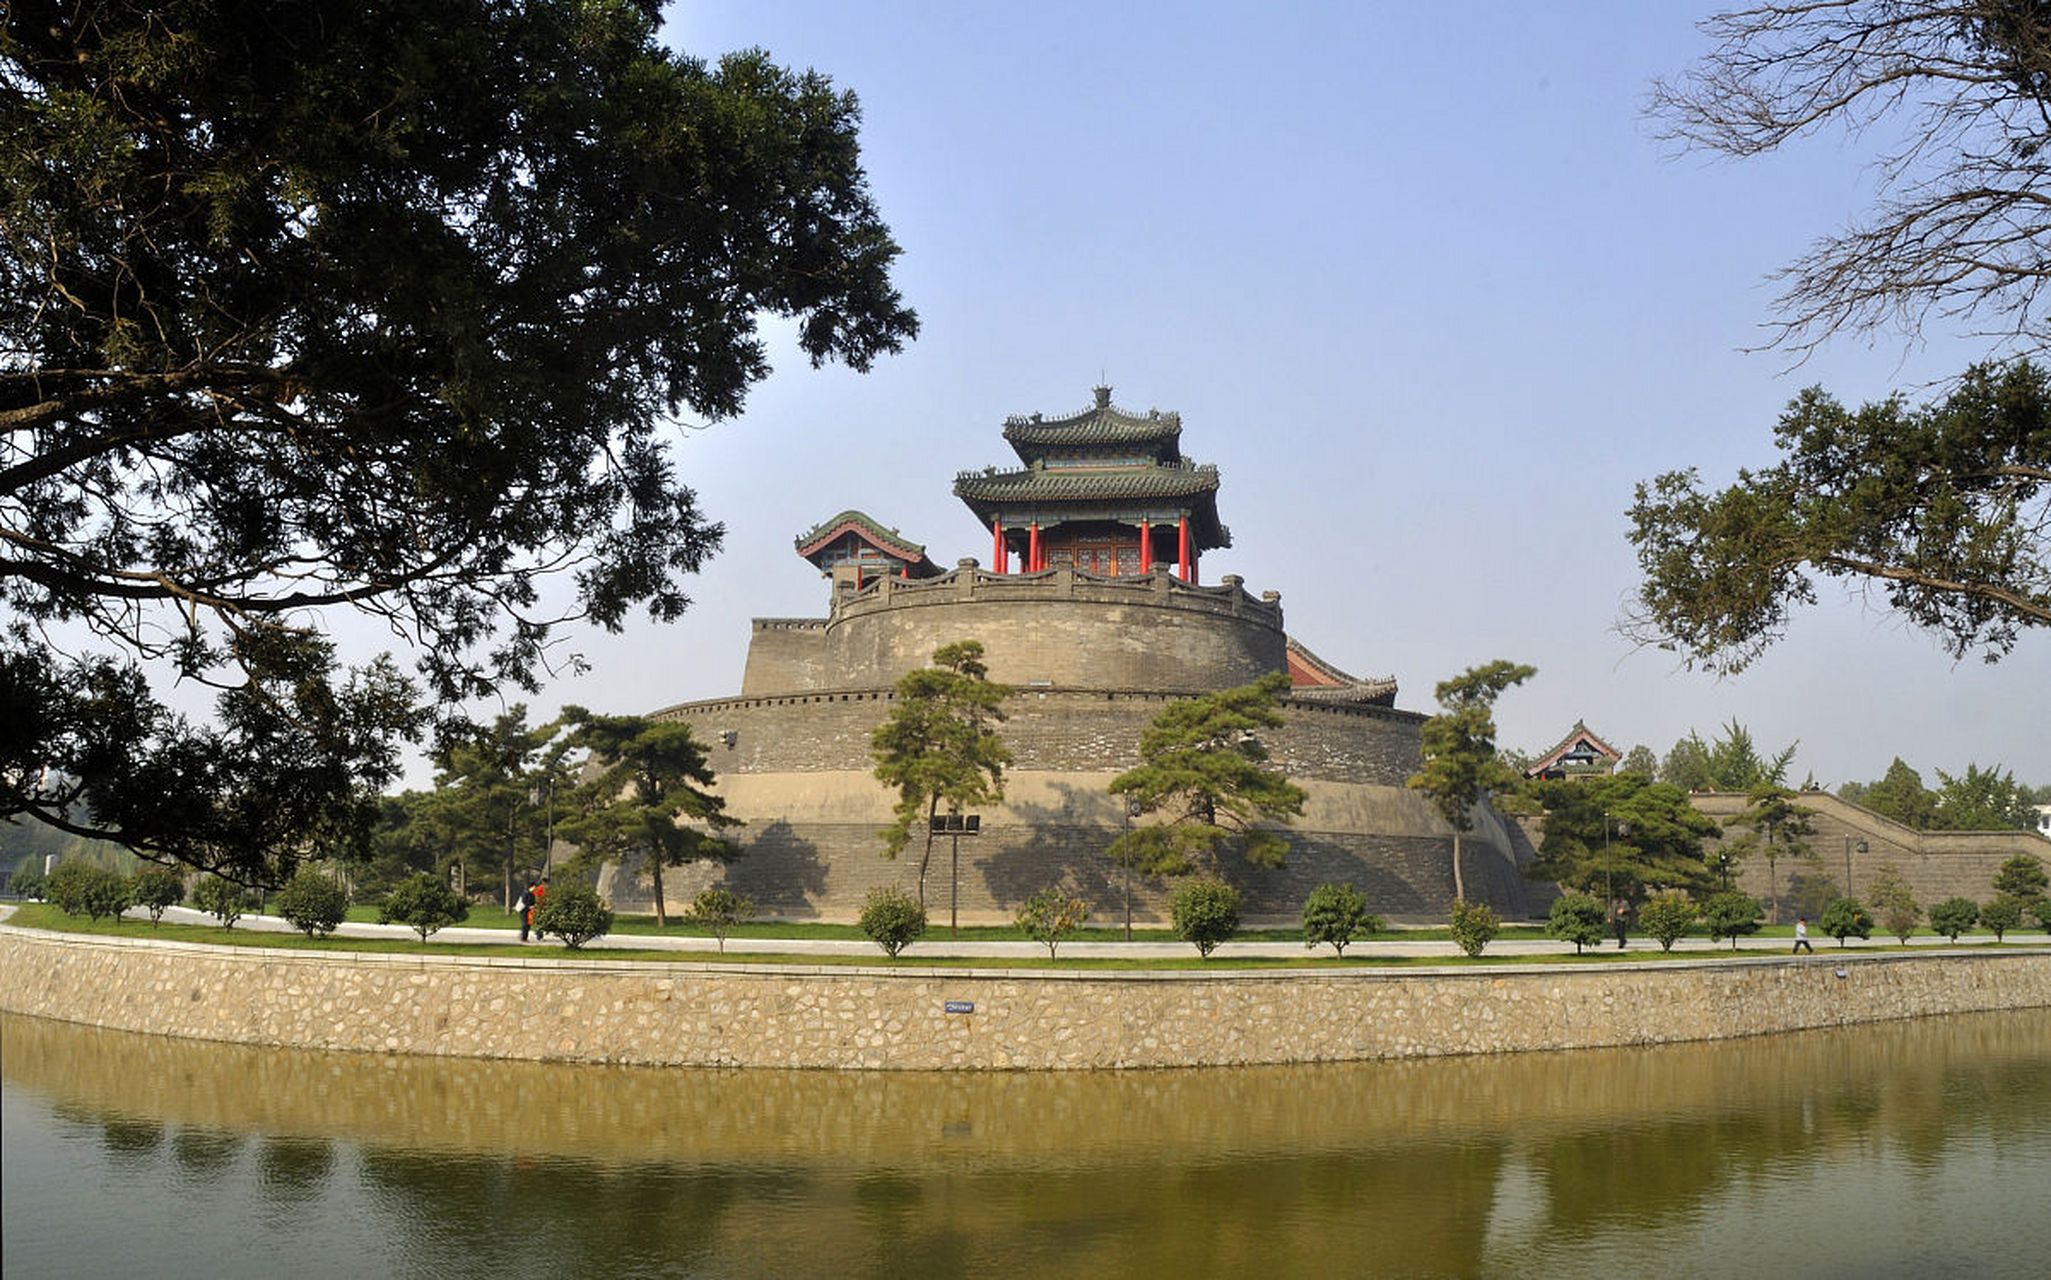 丛台公园是邯郸市最著名的公园之一,也是秋季旅游的热门景点